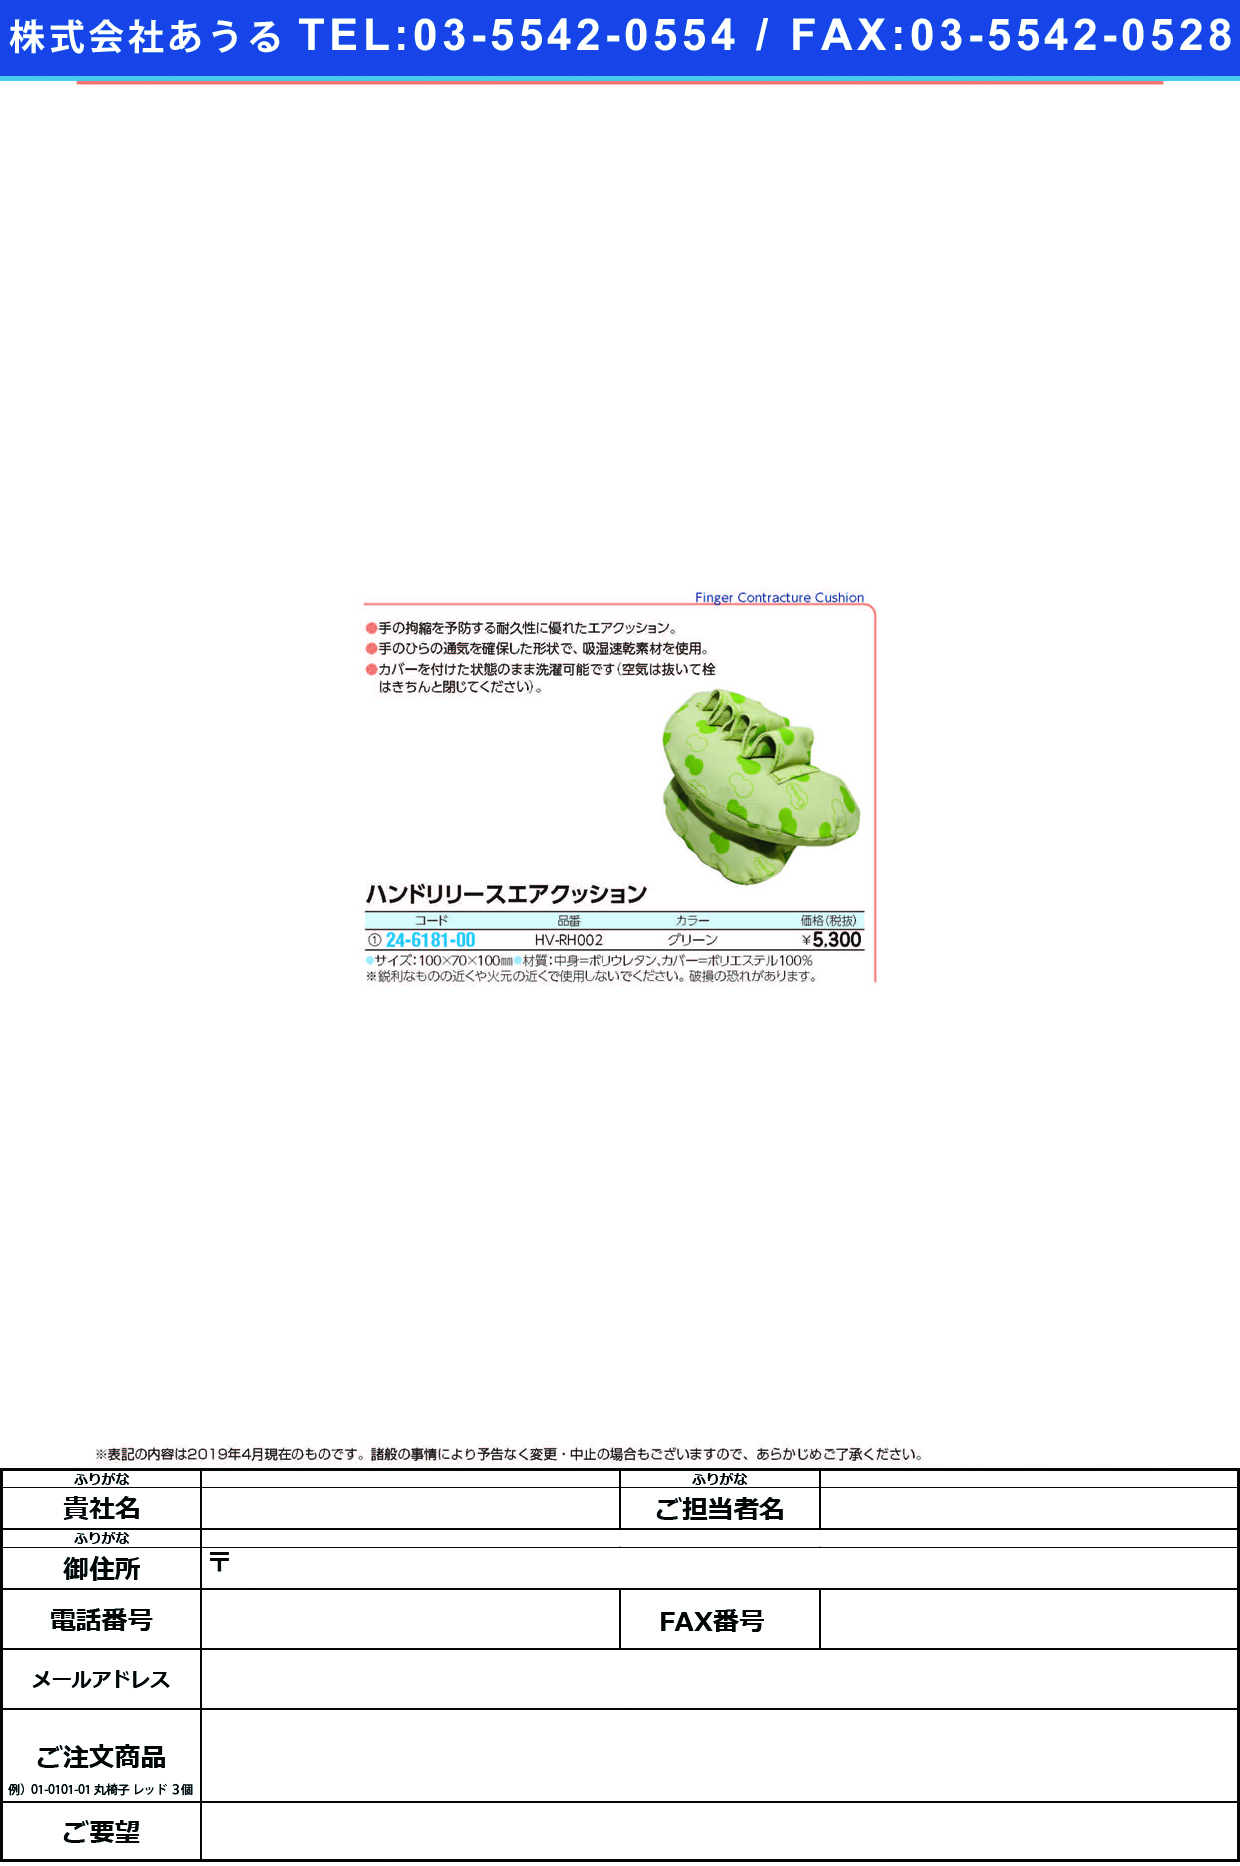 (24-6181-00)ハンドリリースエアクッション HV-RH002(ｸﾞﾘｰﾝ) ﾊﾝﾄﾞﾘﾘｰｽｴｱｸｯｼｮﾝ【1個単位】【2019年カタログ商品】